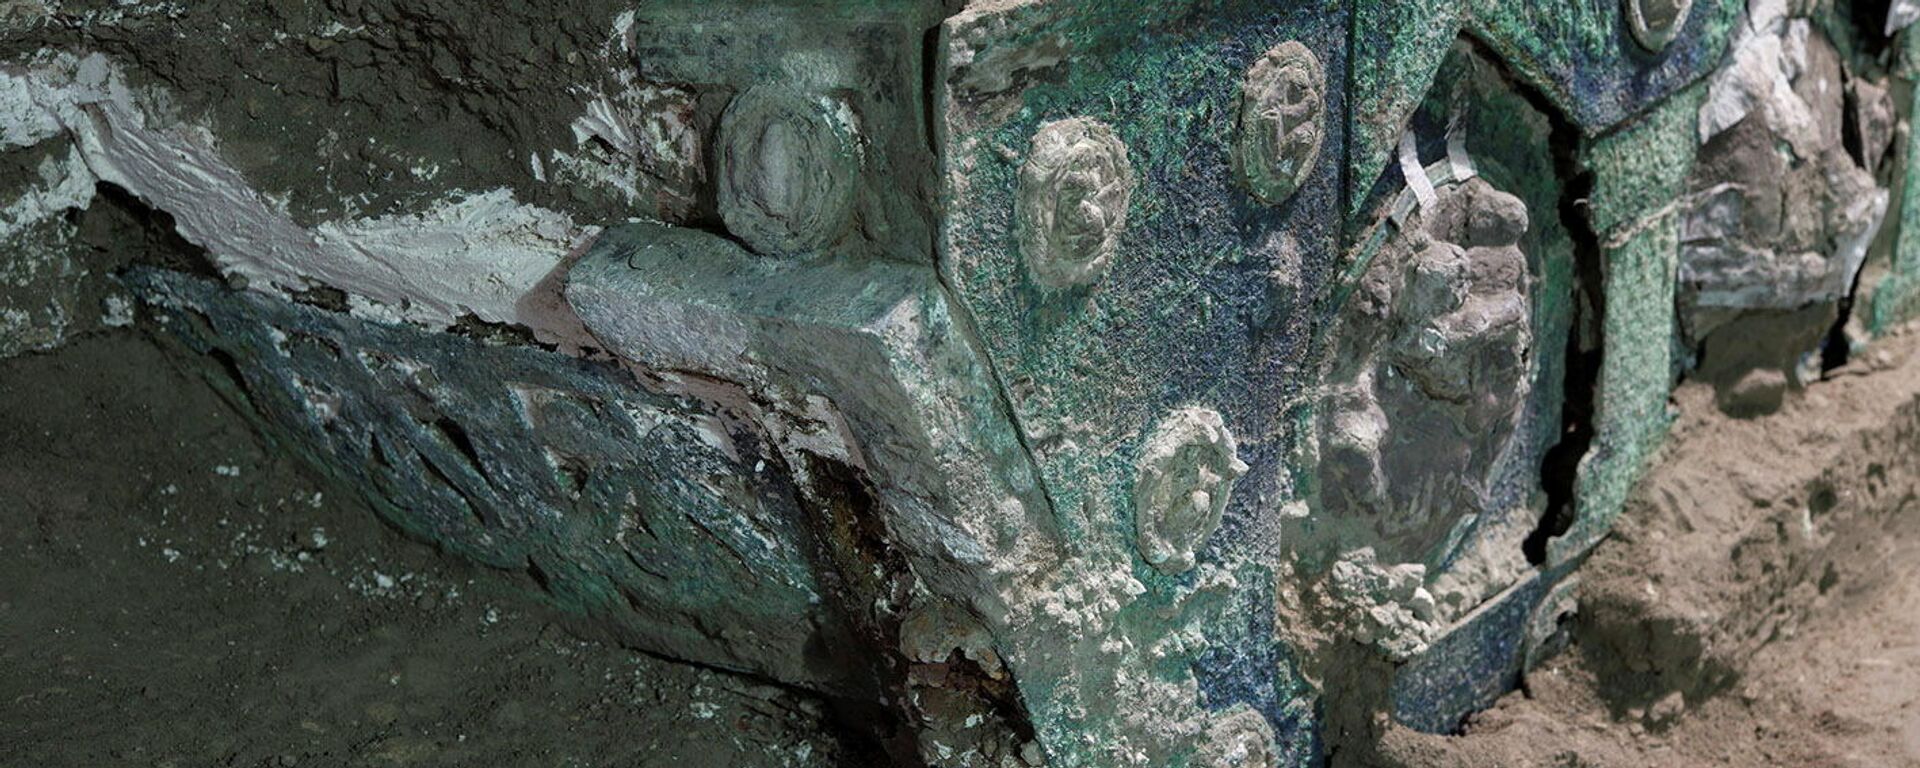 La carroza ceremonial encontrada en Pompeya - Sputnik Mundo, 1920, 27.02.2021